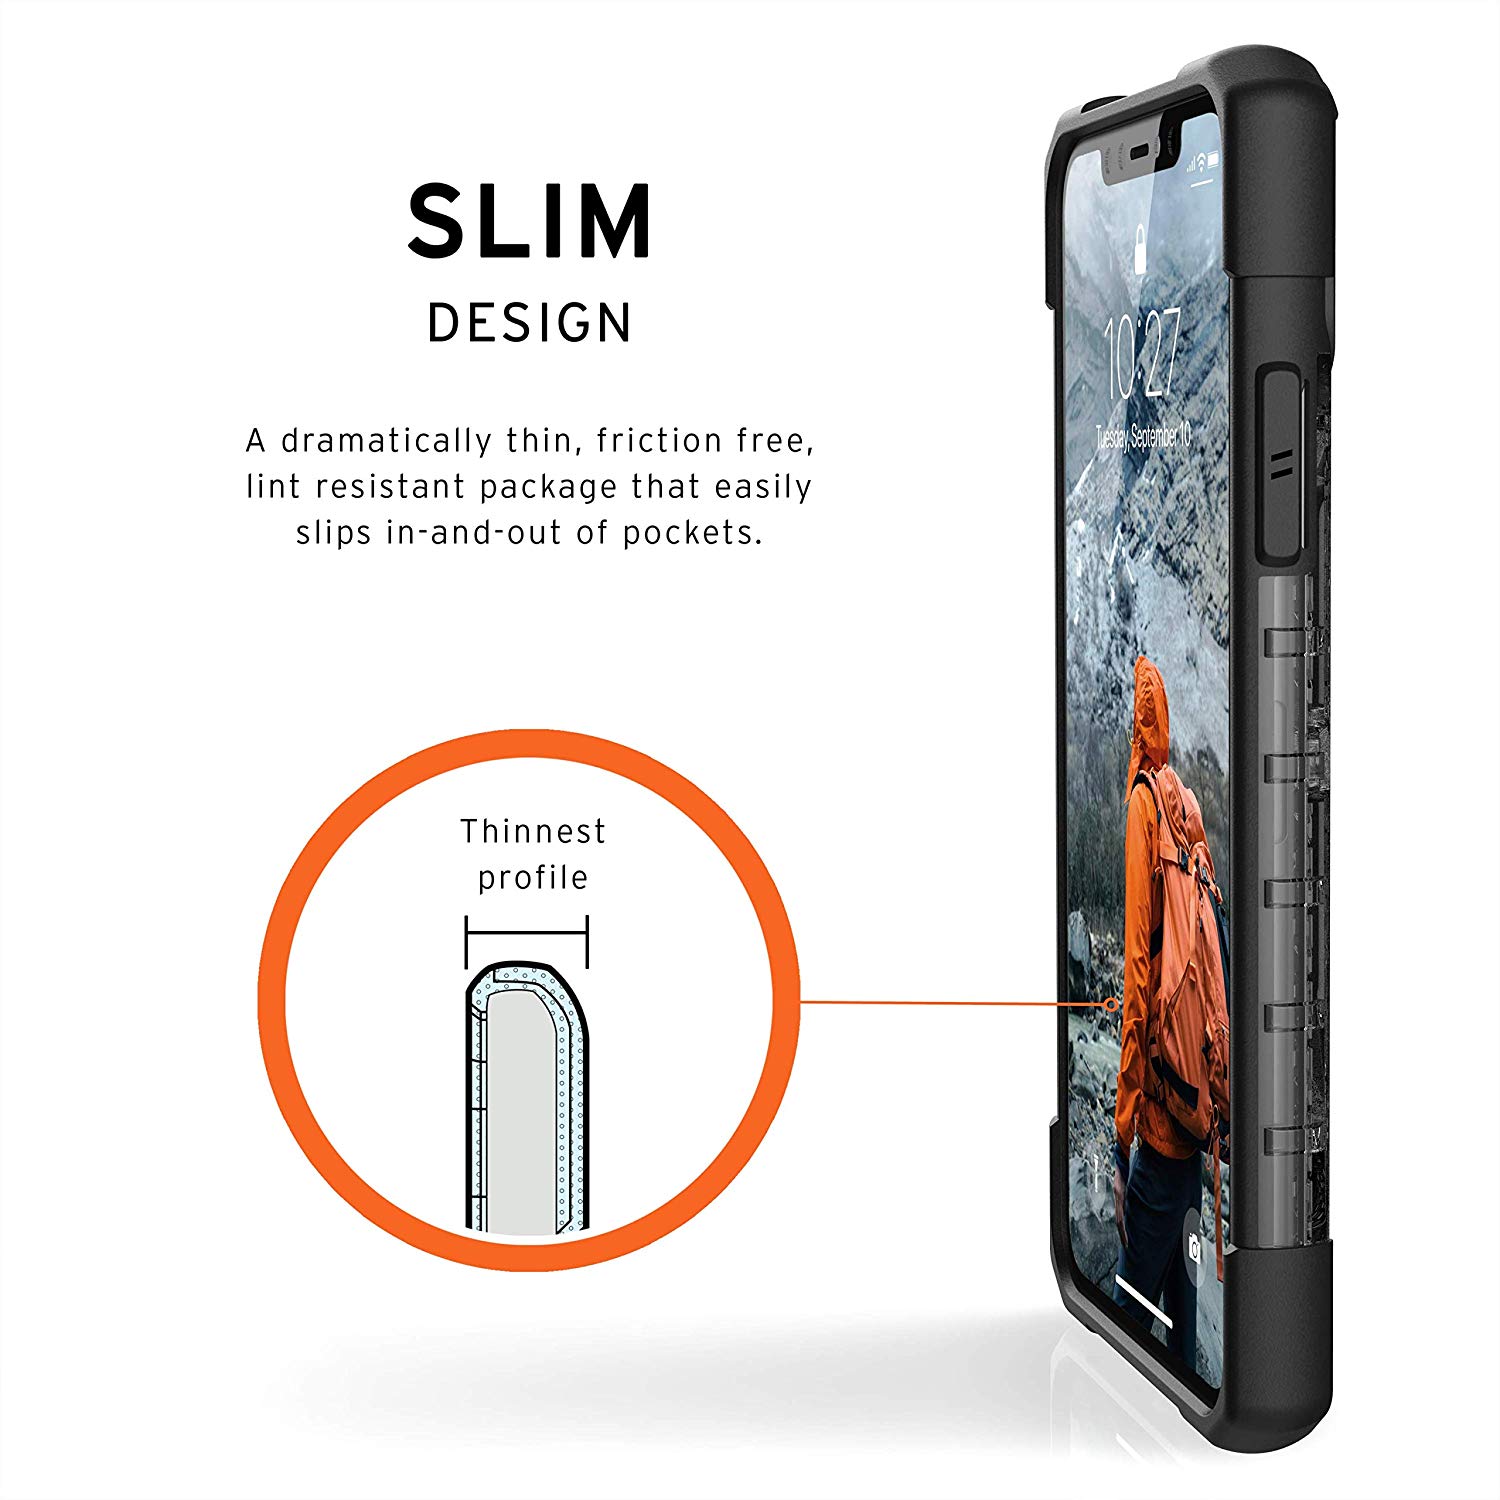 UAG Plasma Series Case iPhone 11 Pro